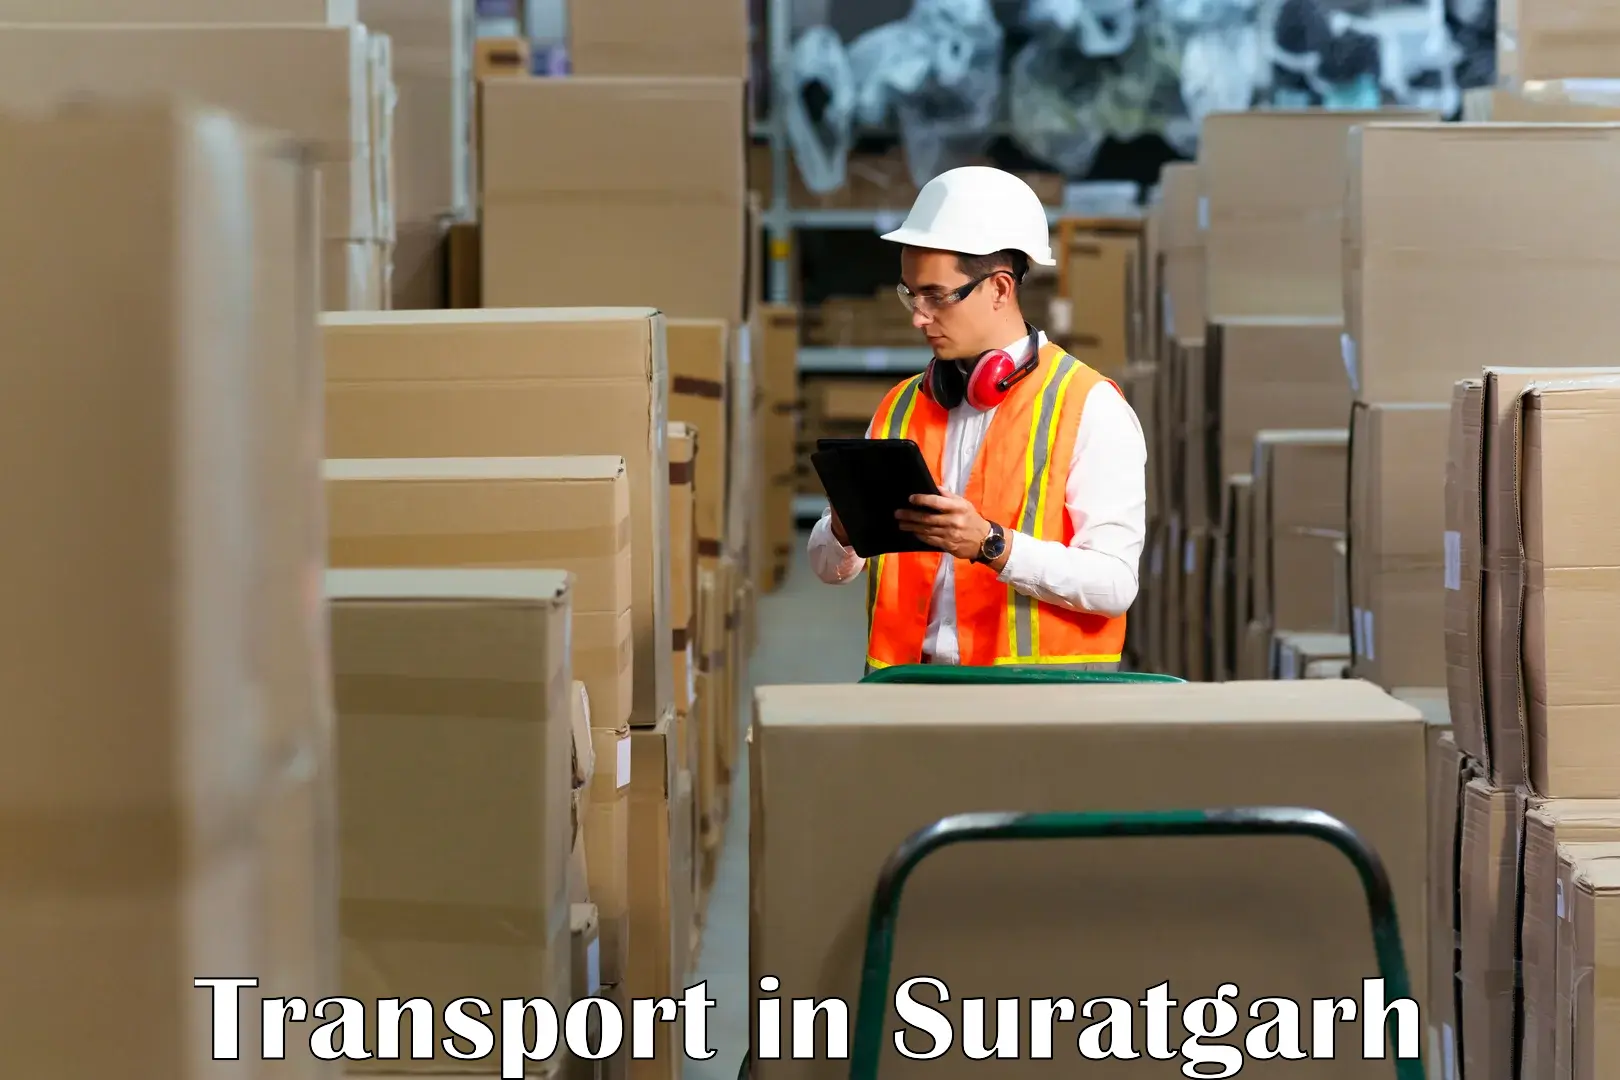 Interstate goods transport in Suratgarh